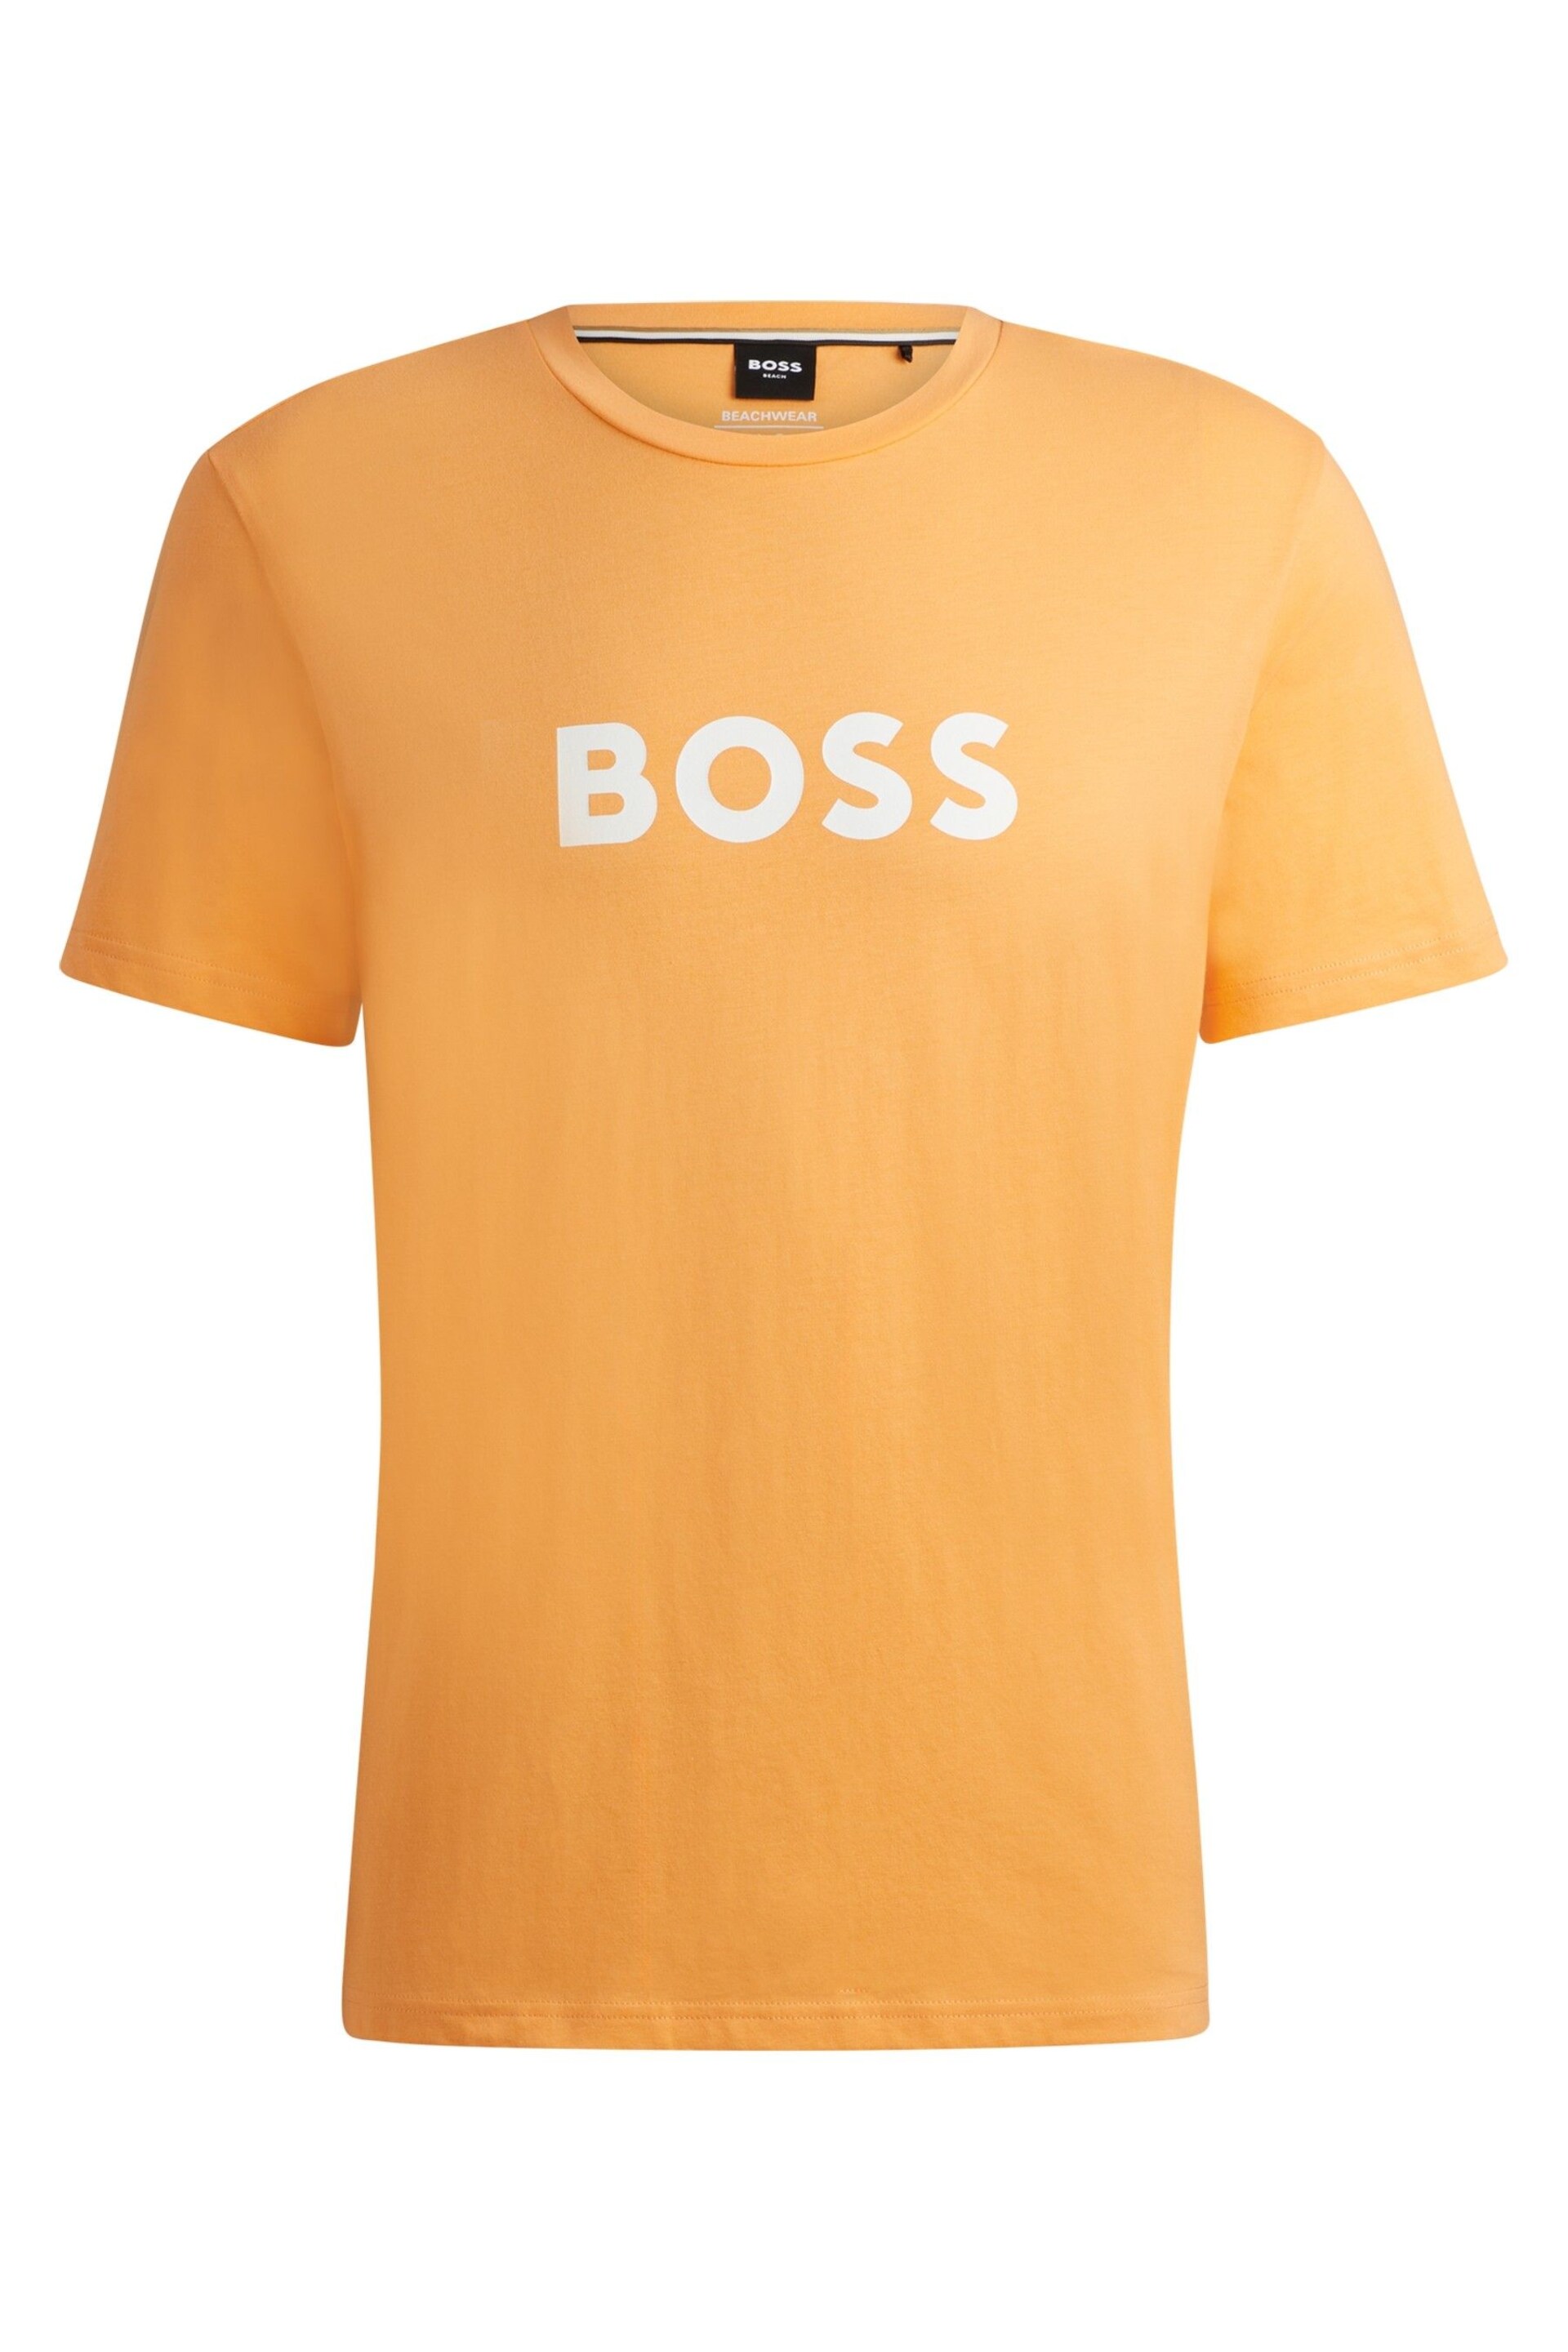 BOSS Orange Large Chest Logo T-Shirt - Image 3 of 3